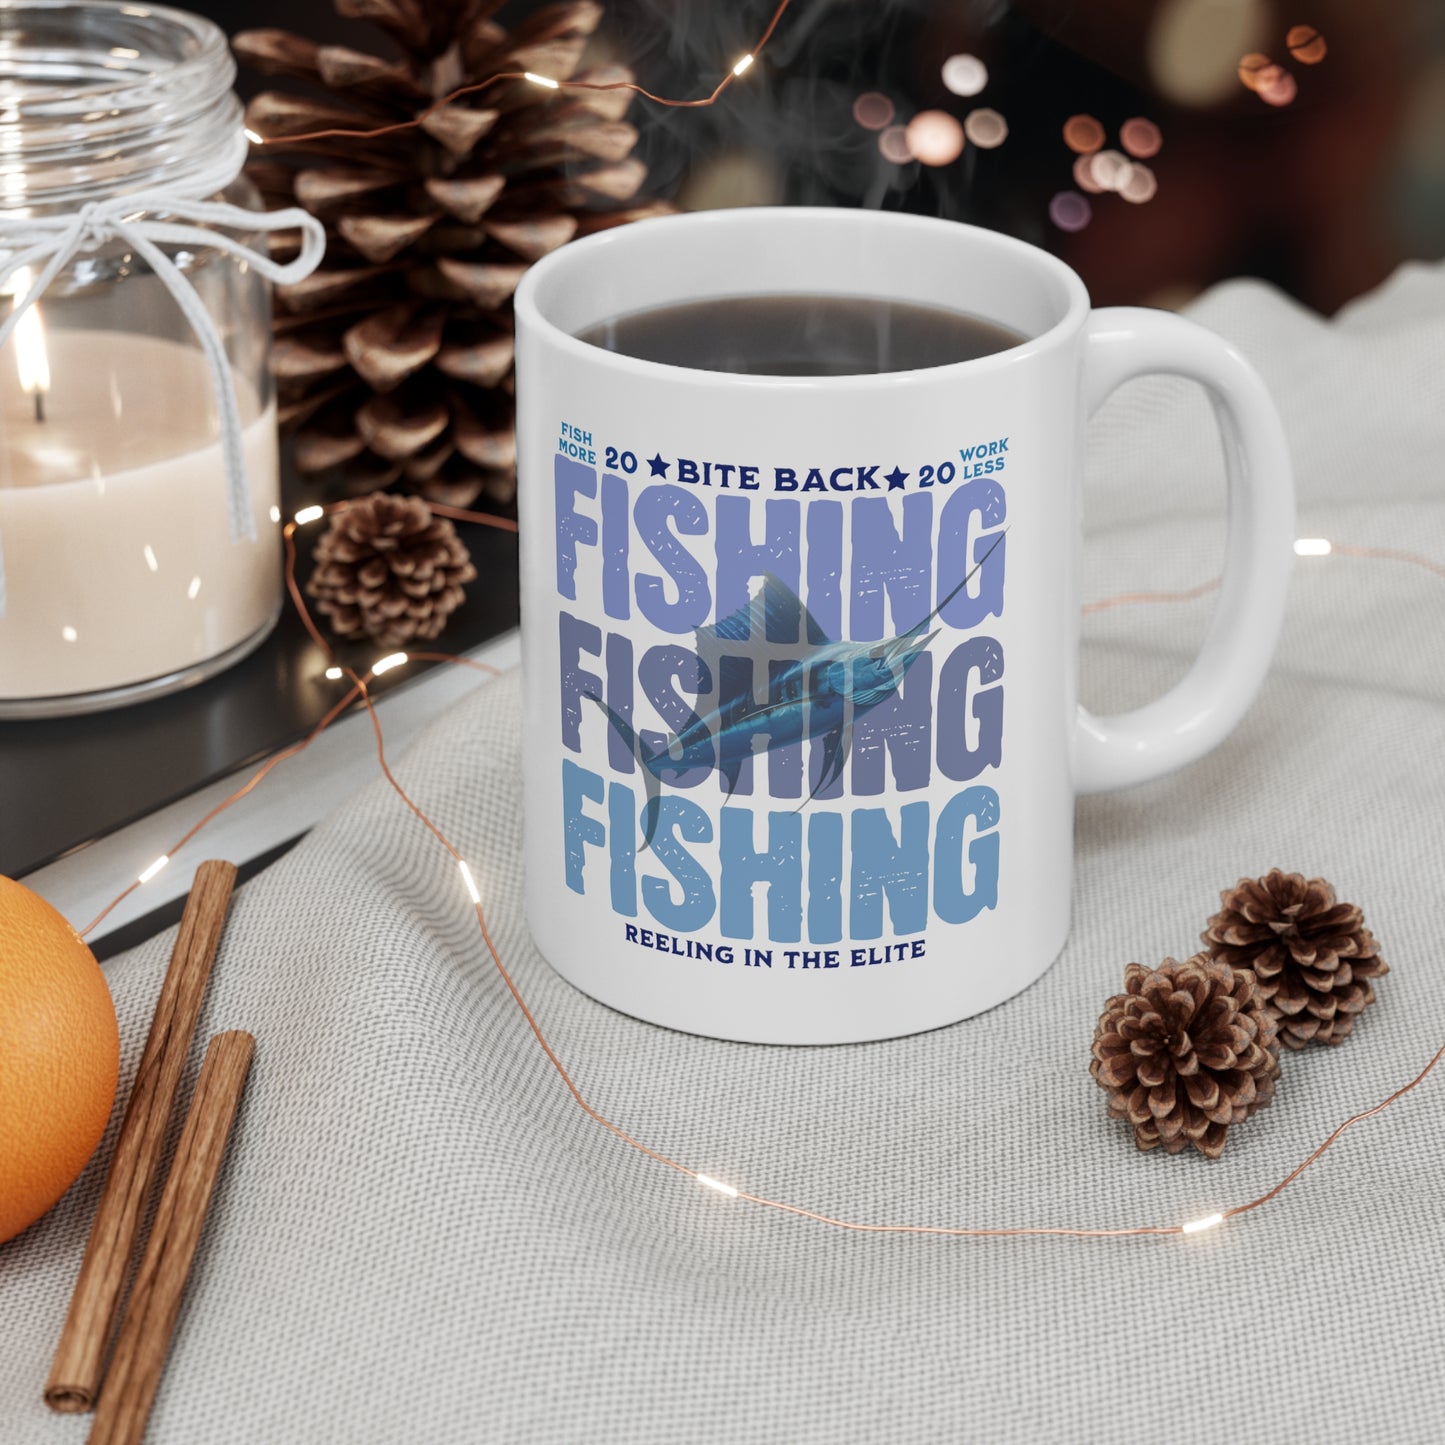 FISHING FISHING FISHING Ceramic Mug 11oz